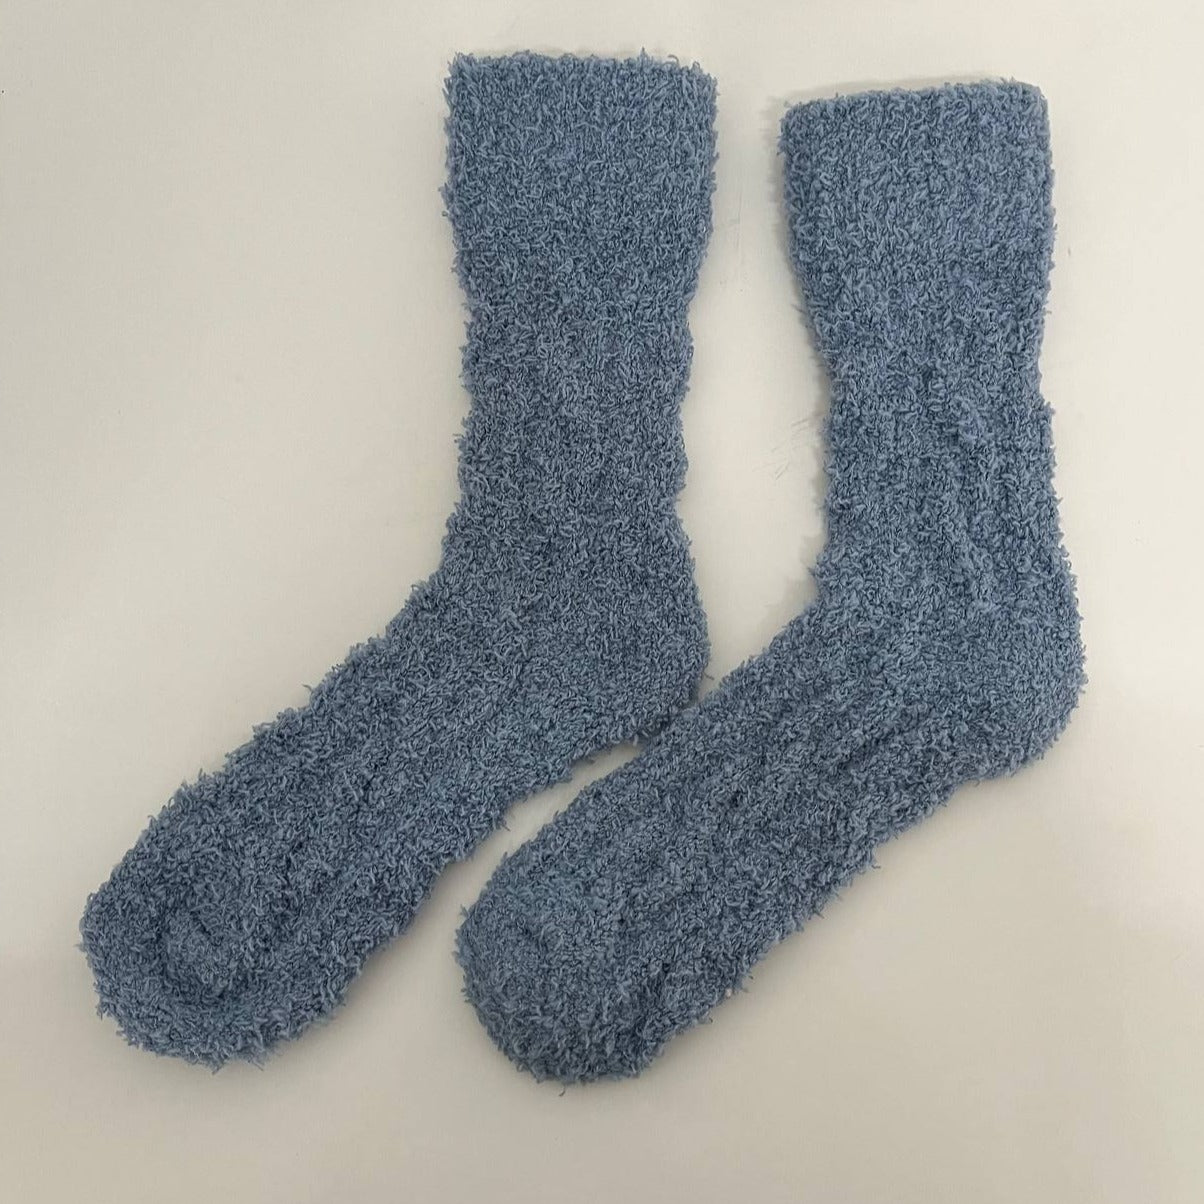 Fluffy Cozy Dusty Blue Socks